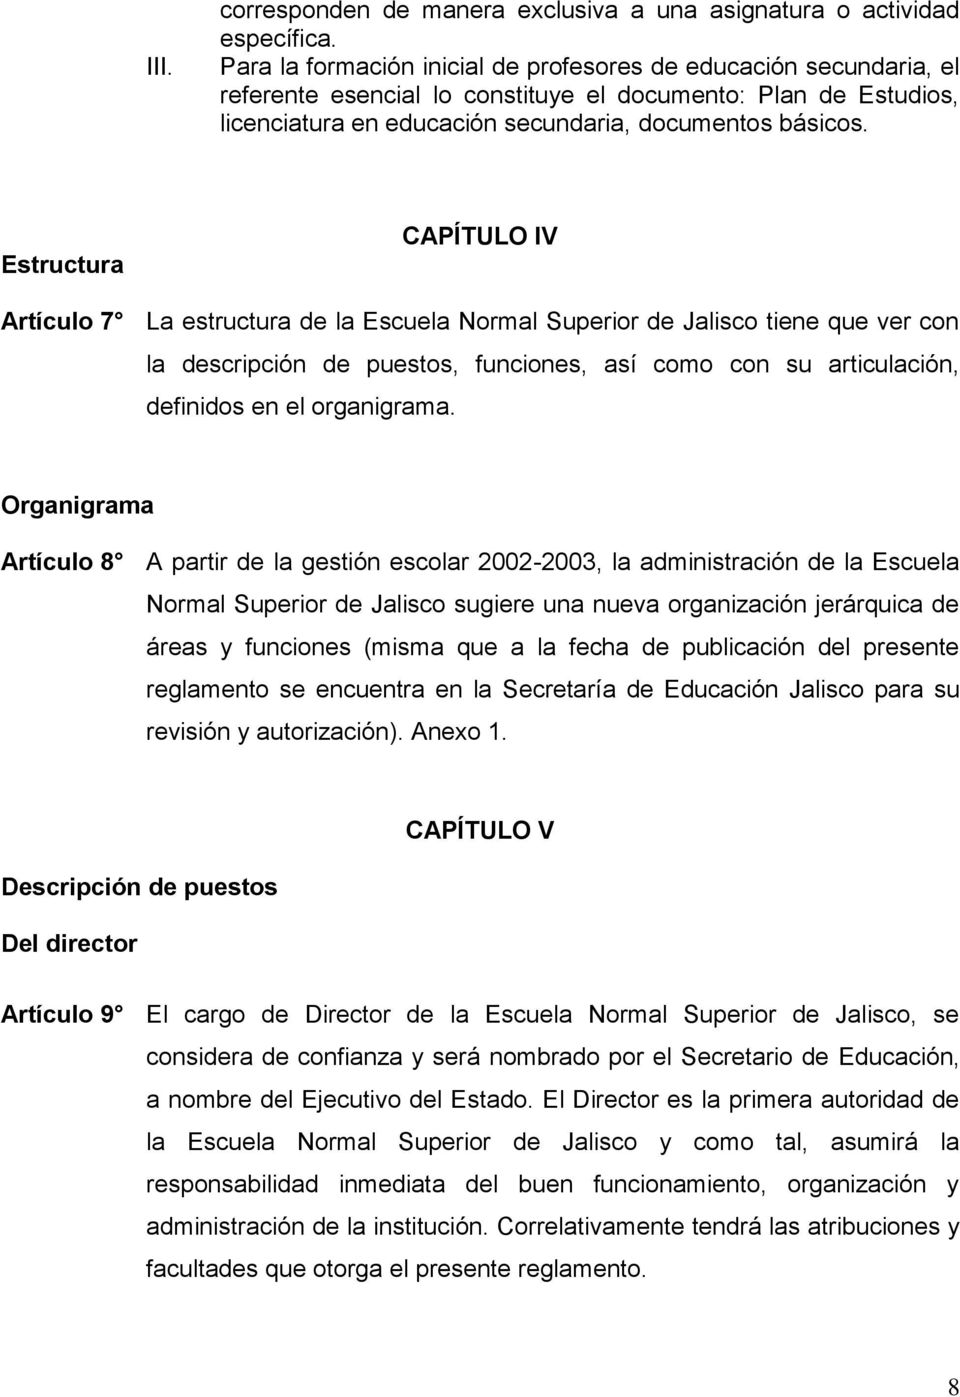 Estructura CAPÍTULO IV Artículo 7 La estructura de la Escuela Normal Superior de Jalisco tiene que ver con la descripción de puestos, funciones, así como con su articulación, definidos en el